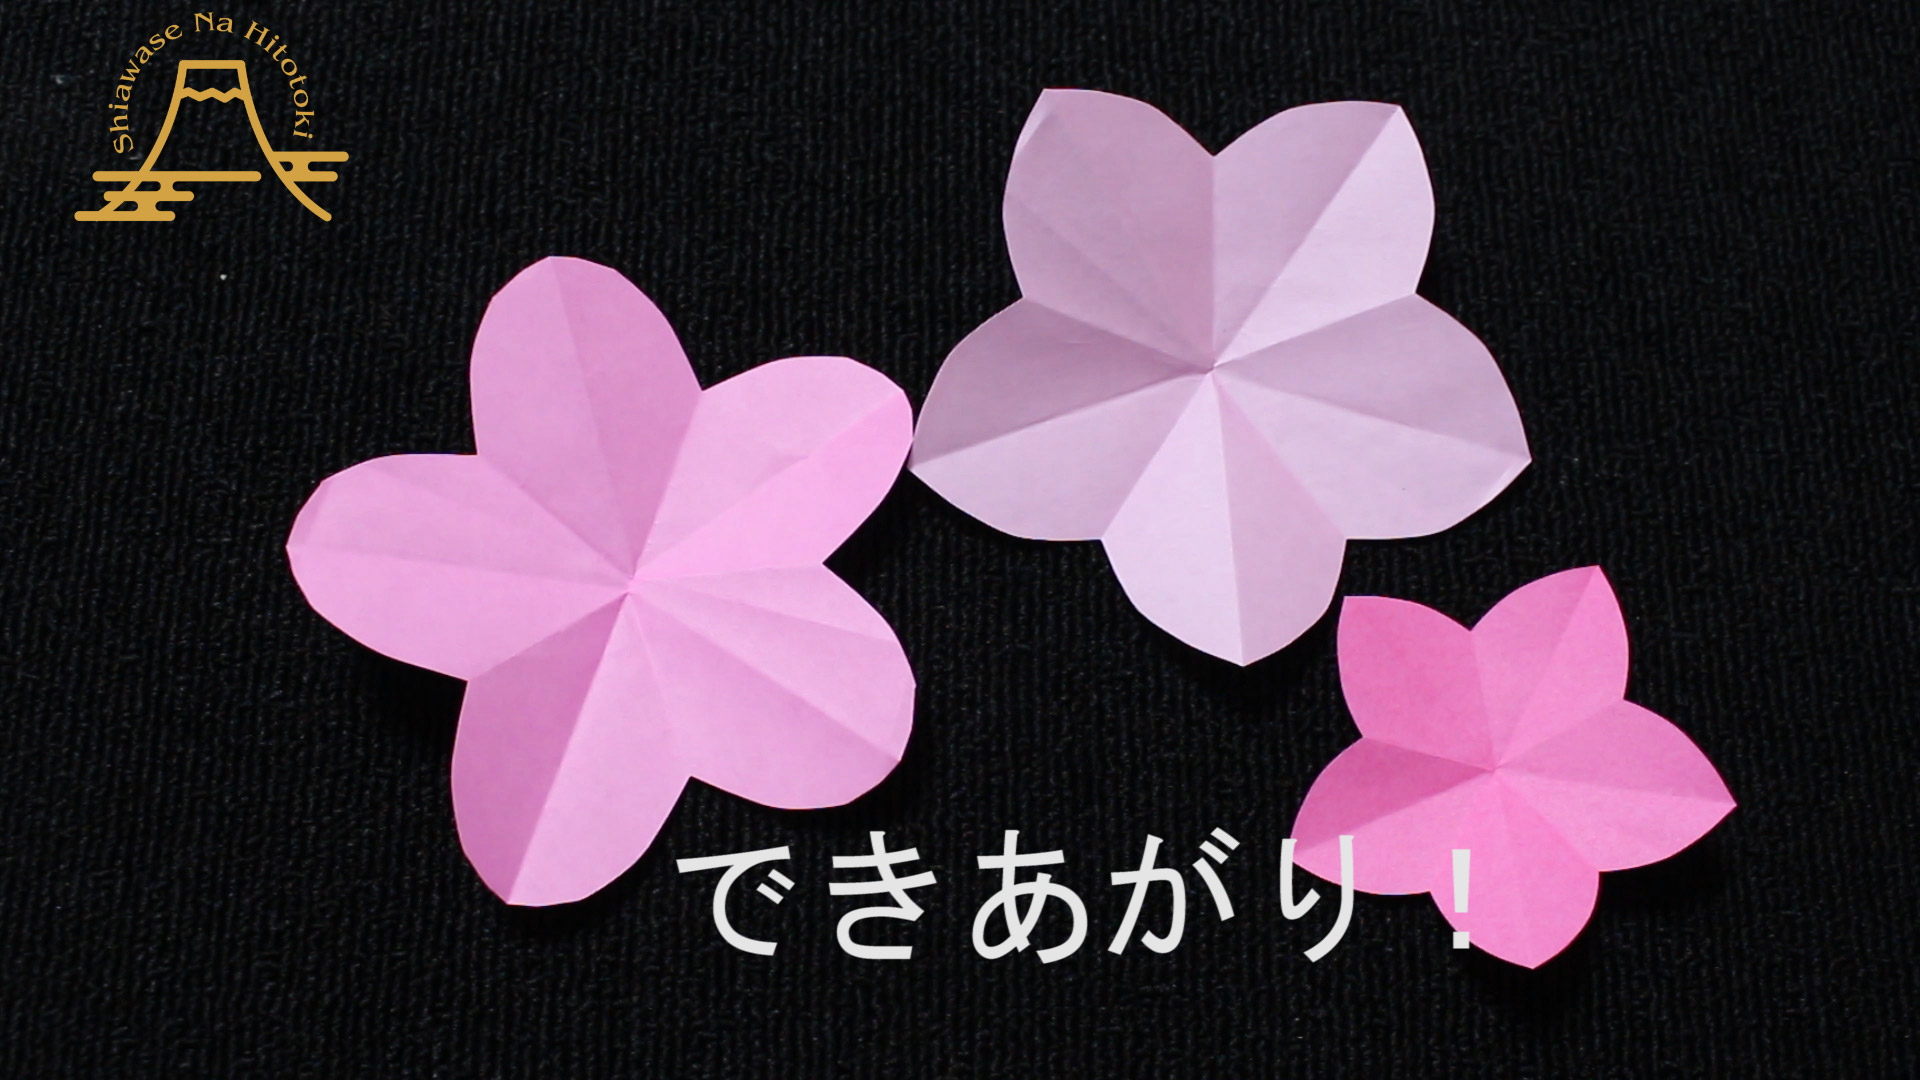 簡単 折り紙 桃の花 折り紙の折り方 幸せなひと時